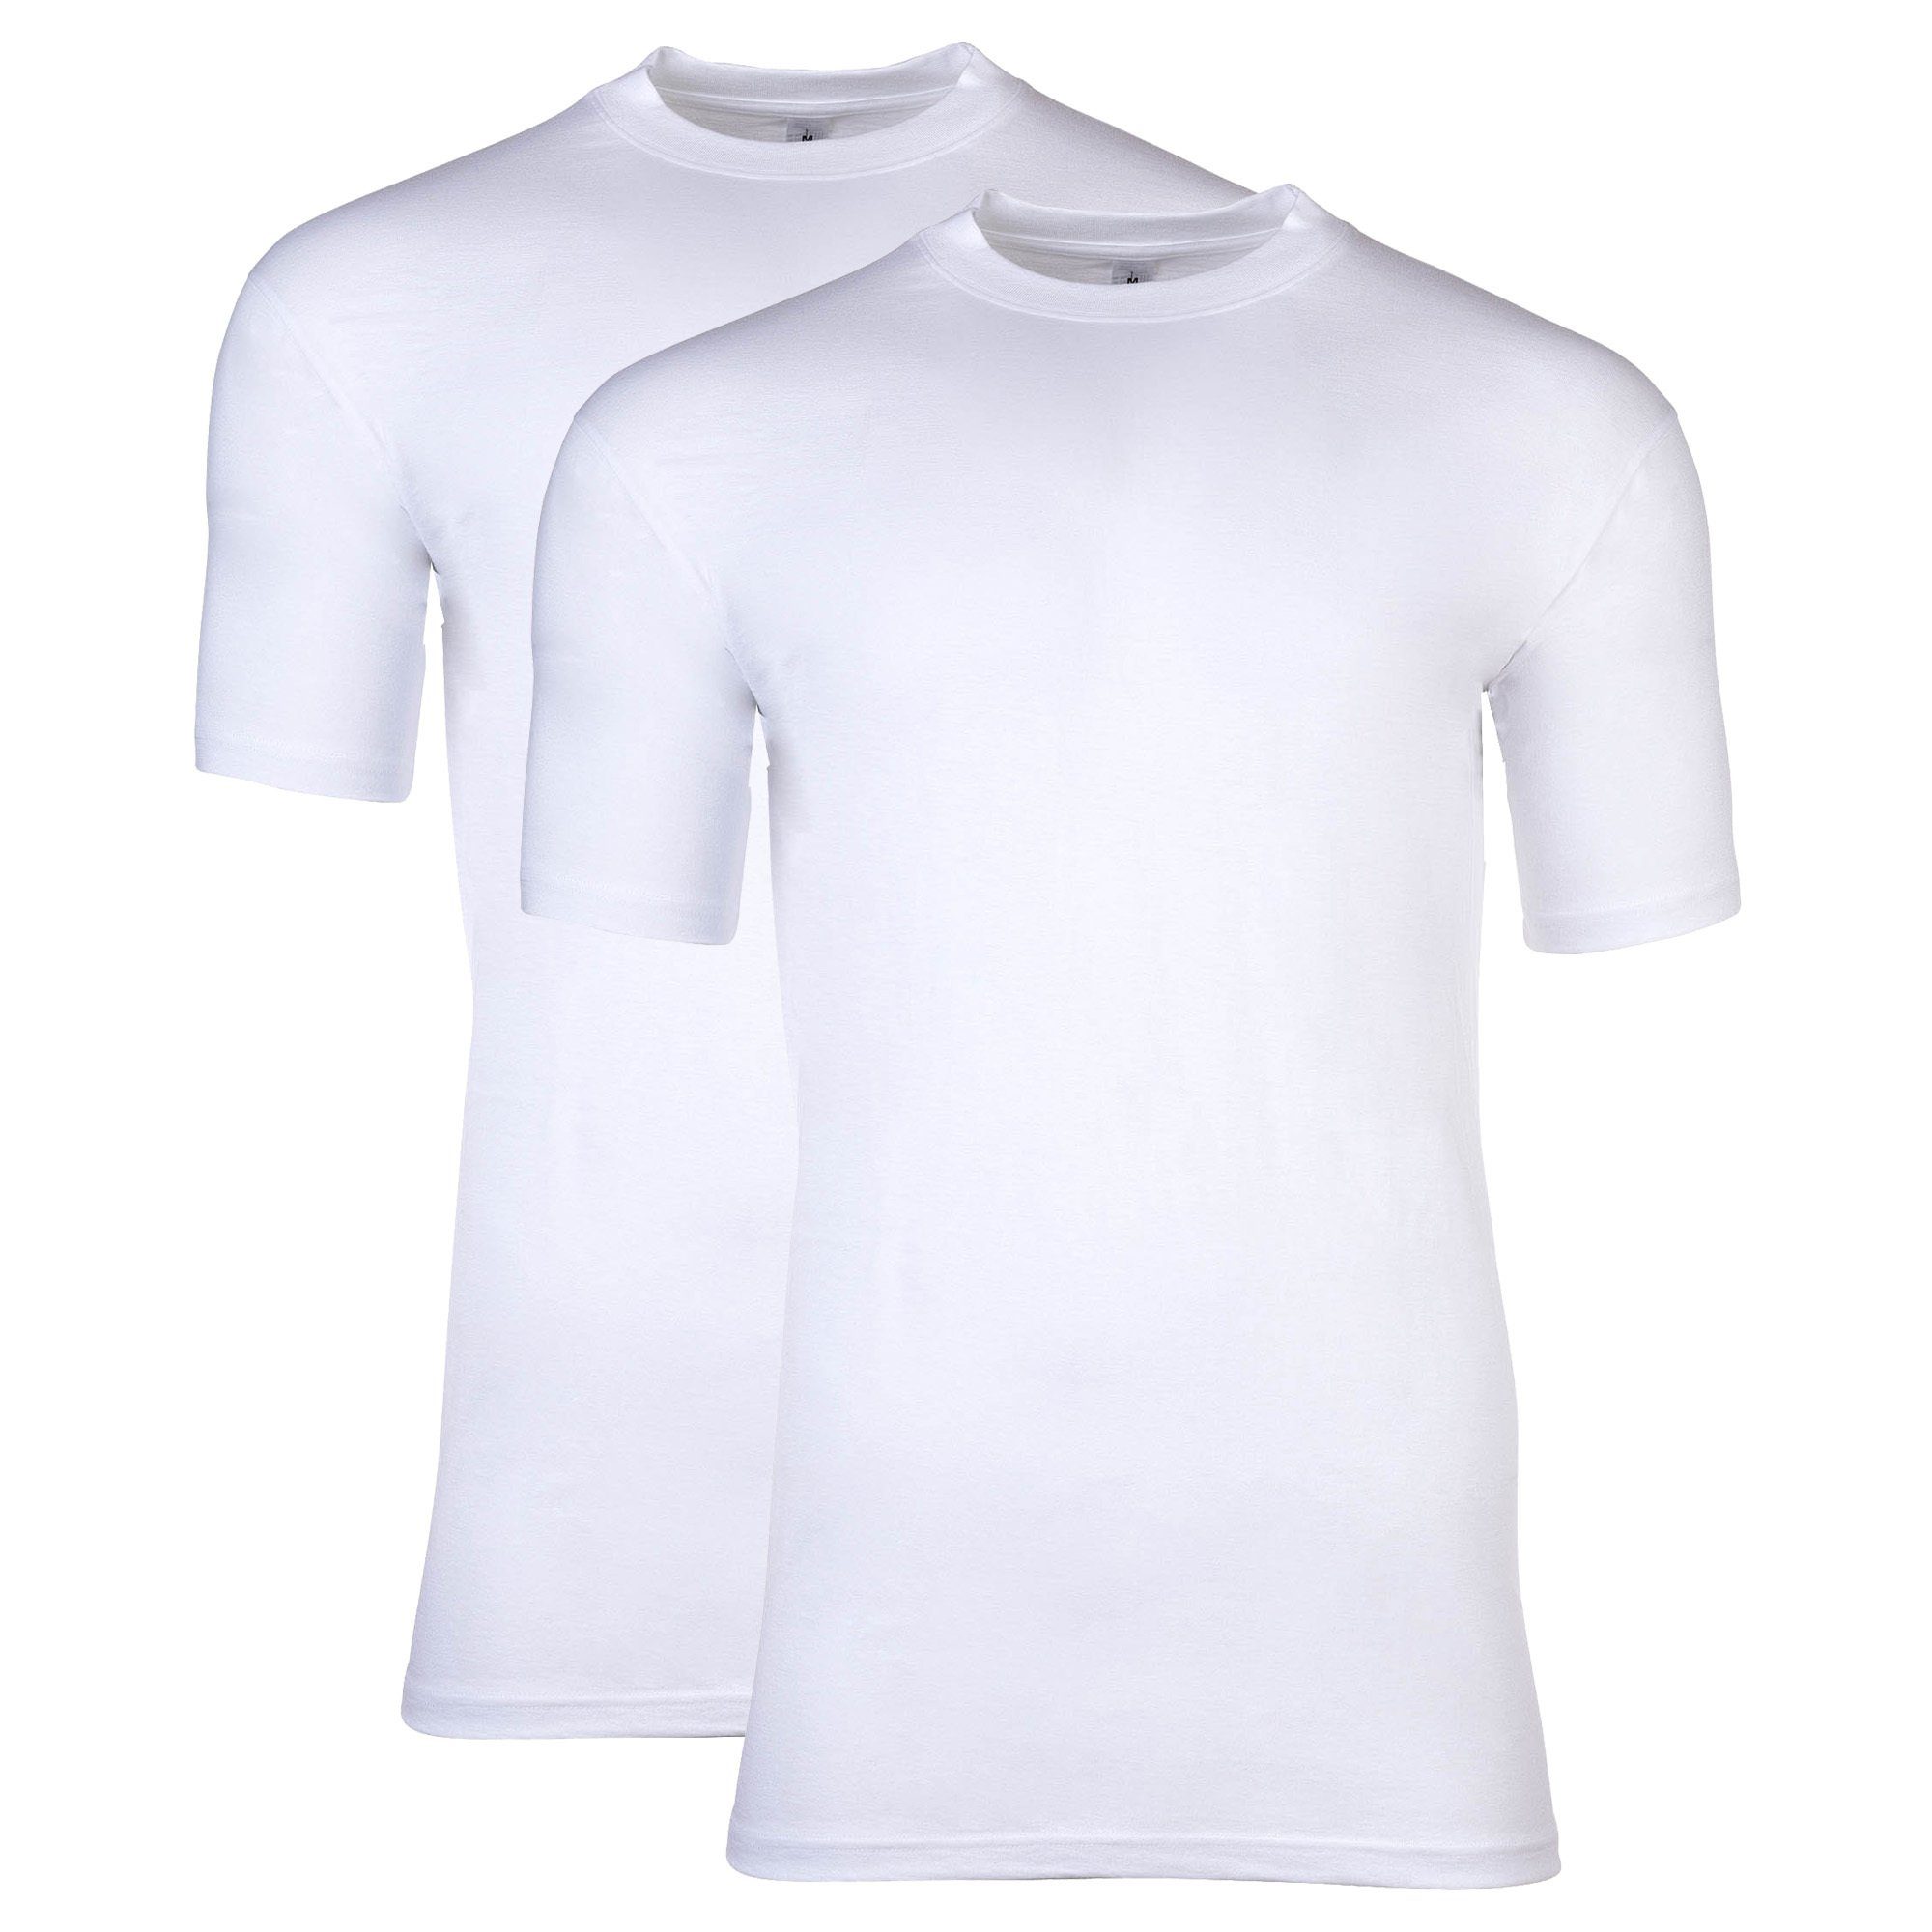 Hom T-Shirt Herren T-Shirt, 2er Pack - Tee Shirt Harrow Weiß